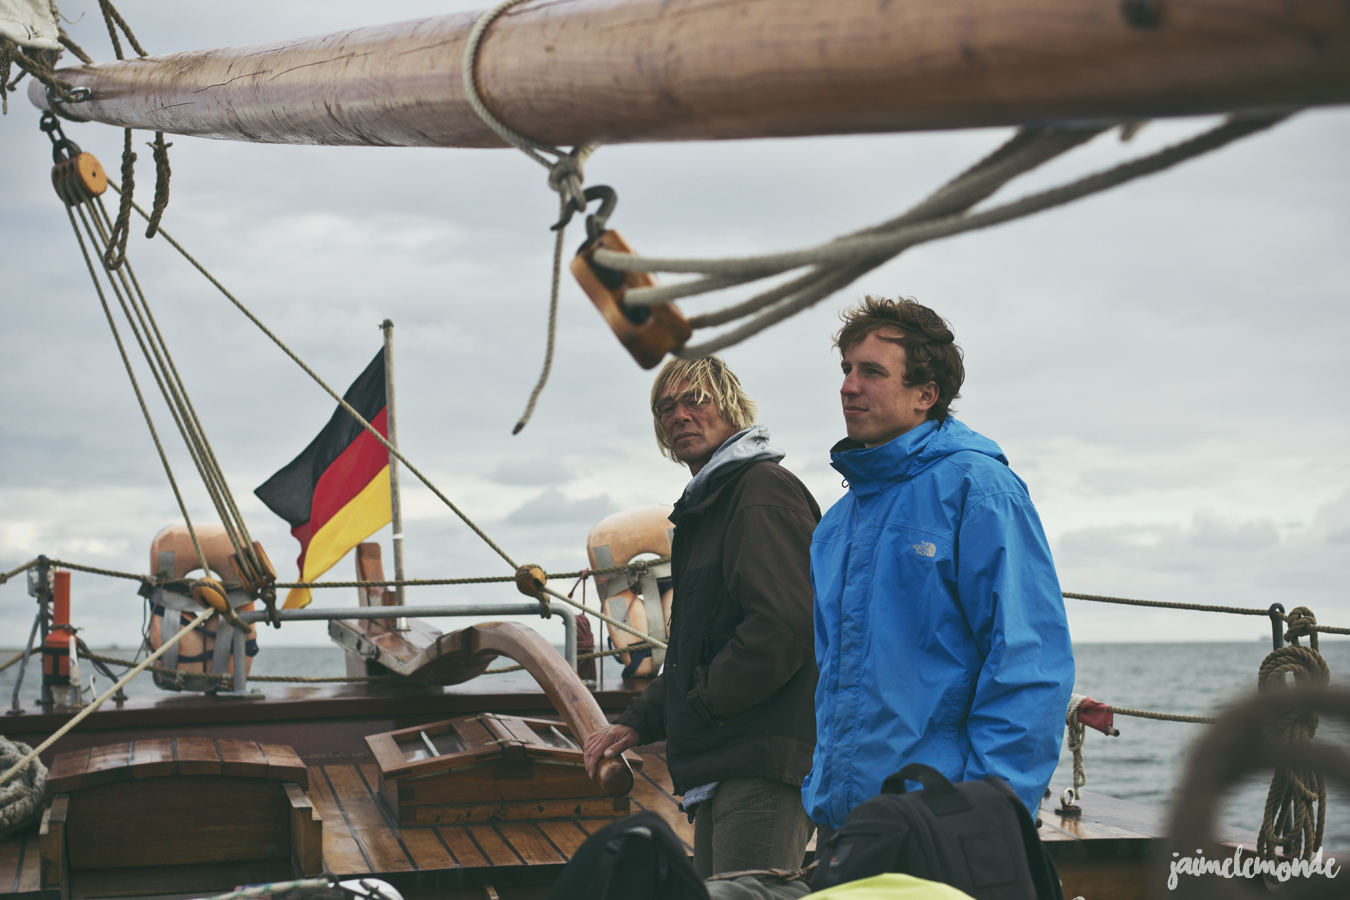 blog voyage - 50 photos en mer des Wadden - Allemagne - ©jaimelemonde (47)